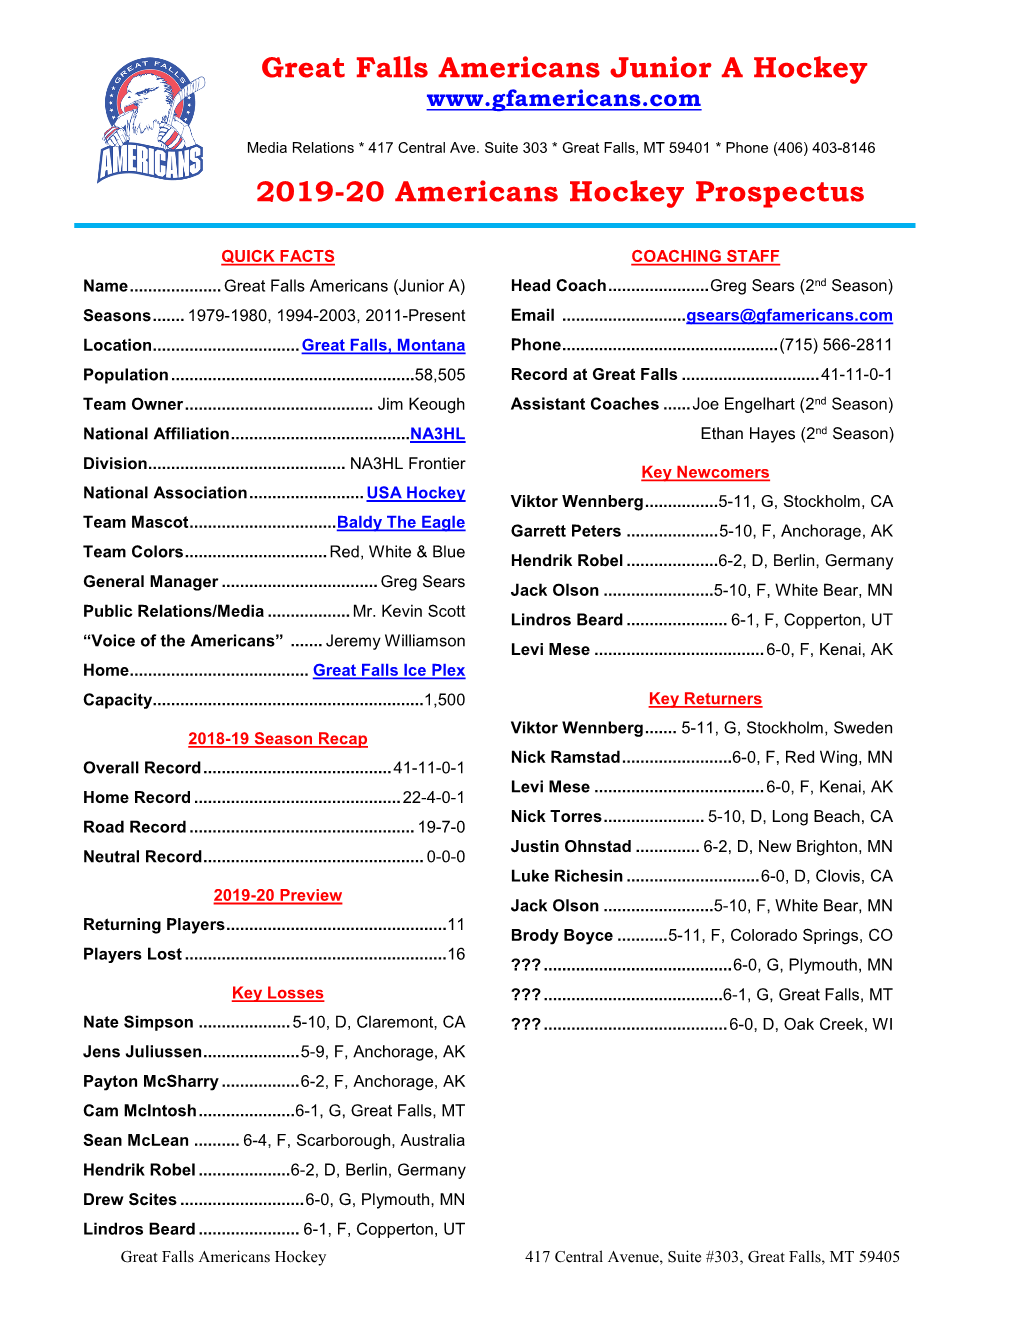 Great Falls Americans Junior a Hockey 2019-20 Americans Hockey